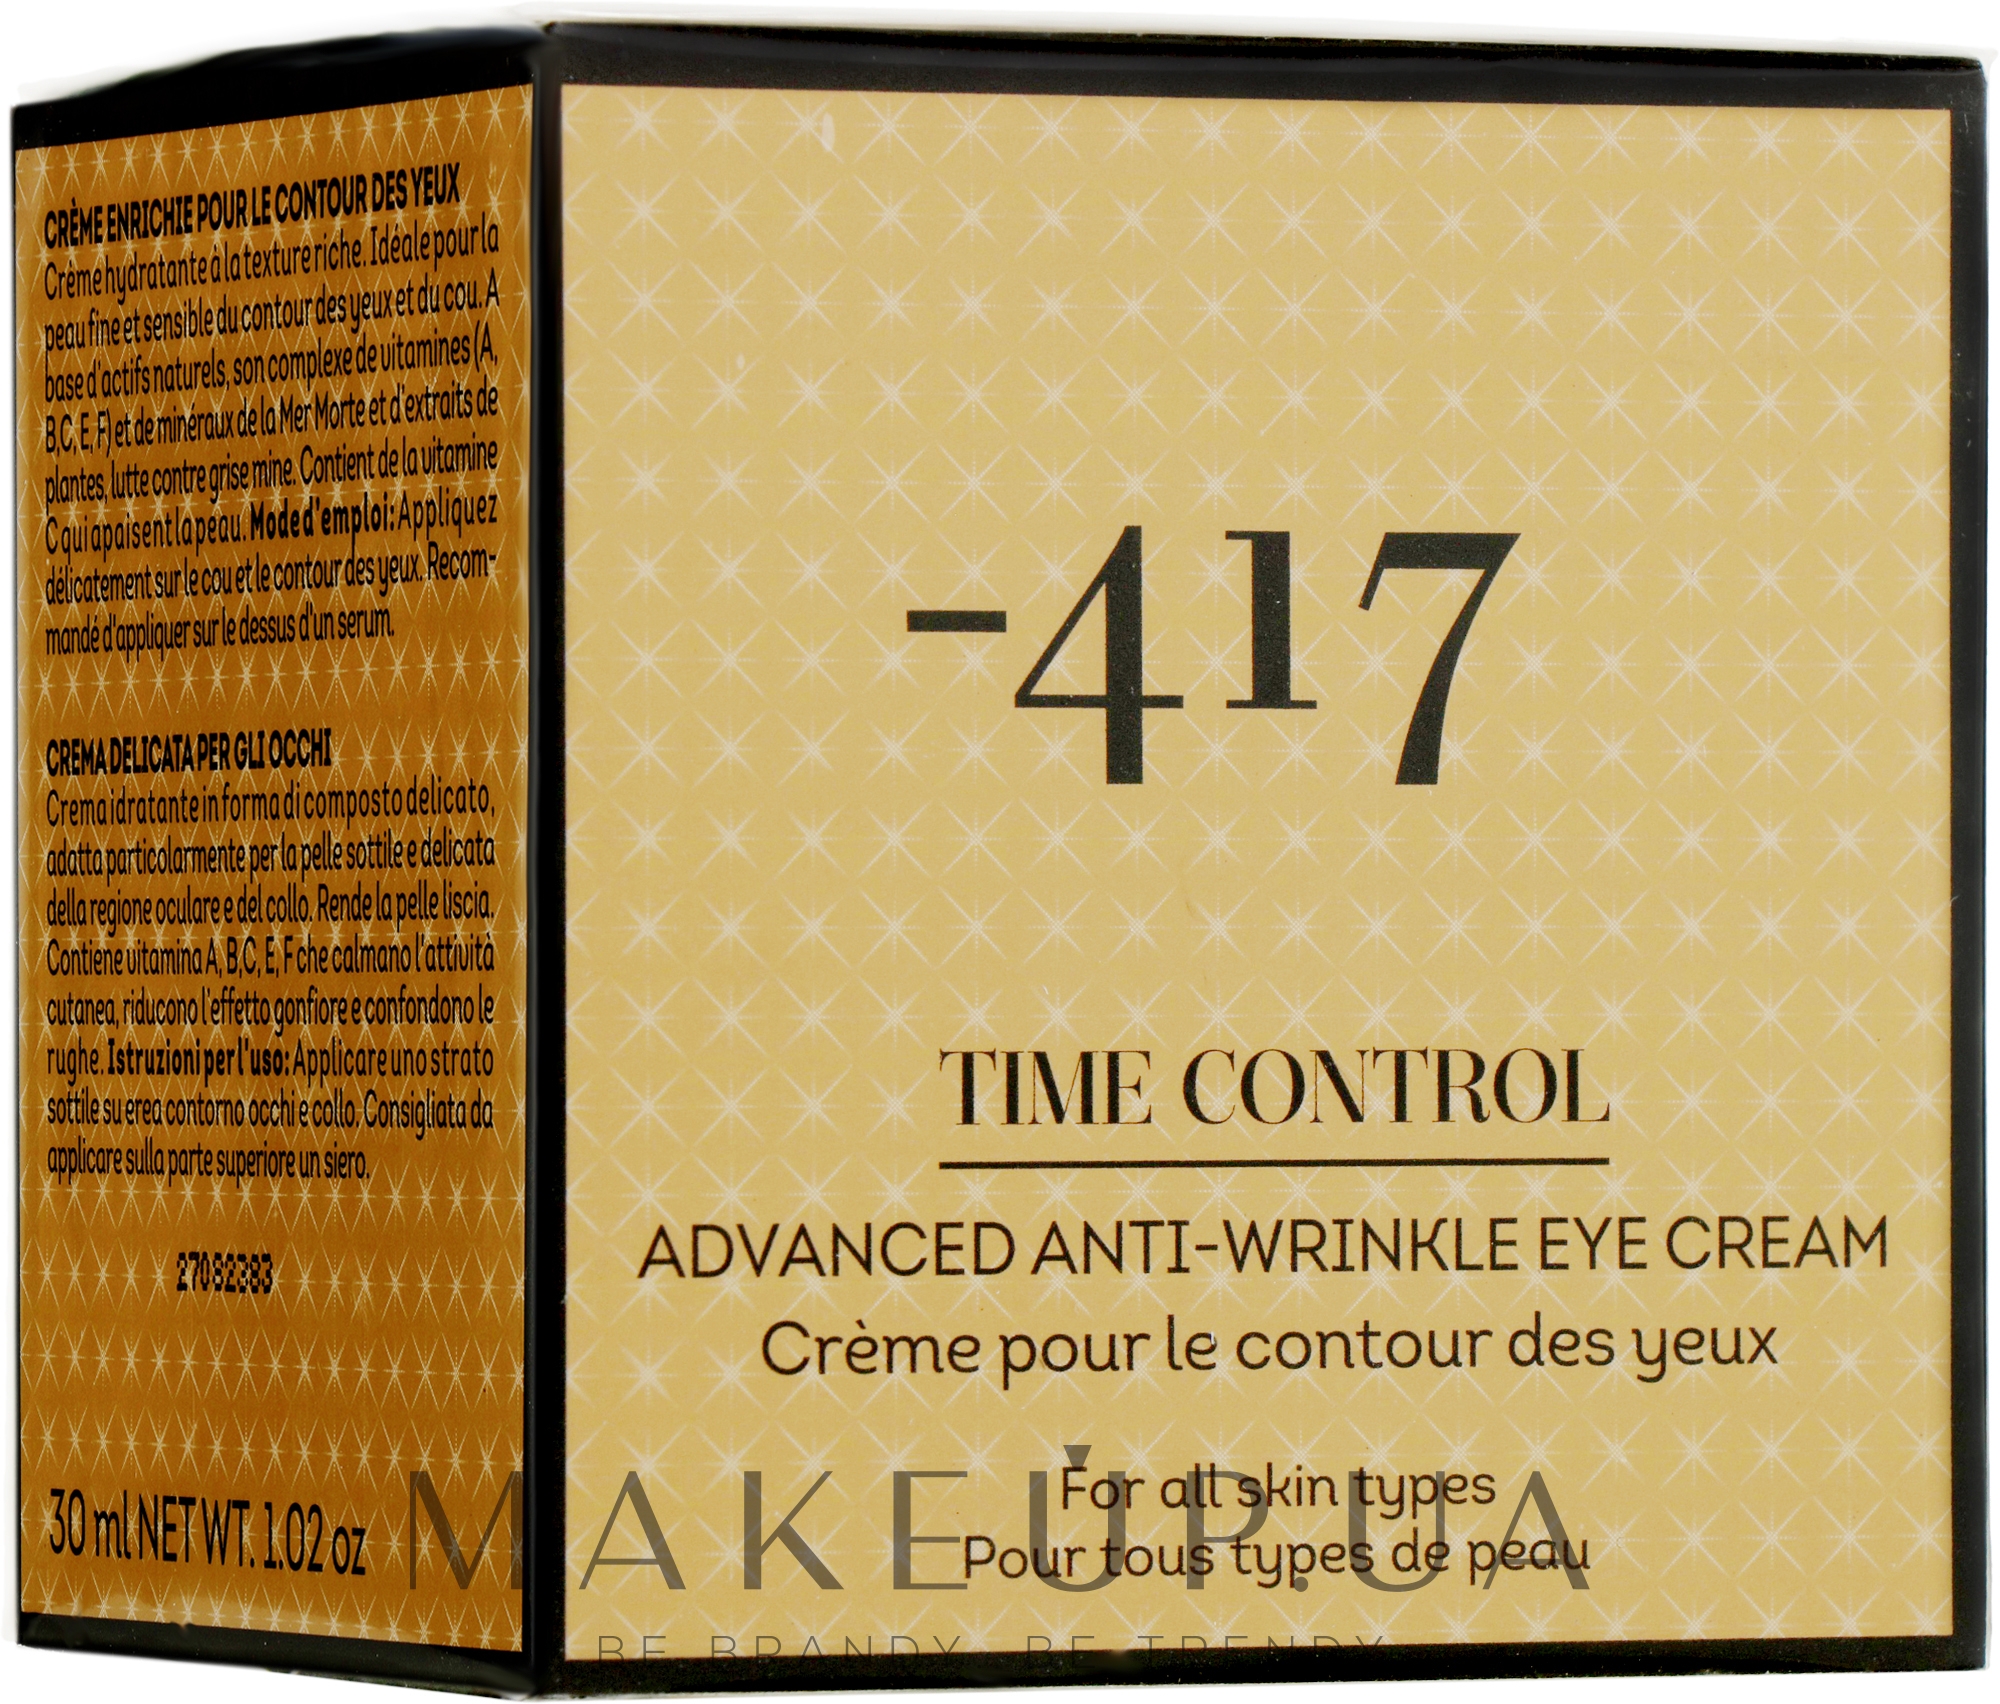 Обогащенный крем для контура глаз "Контроль над старением" - -417 Time Control Collection Rich Eye Cream — фото 30ml